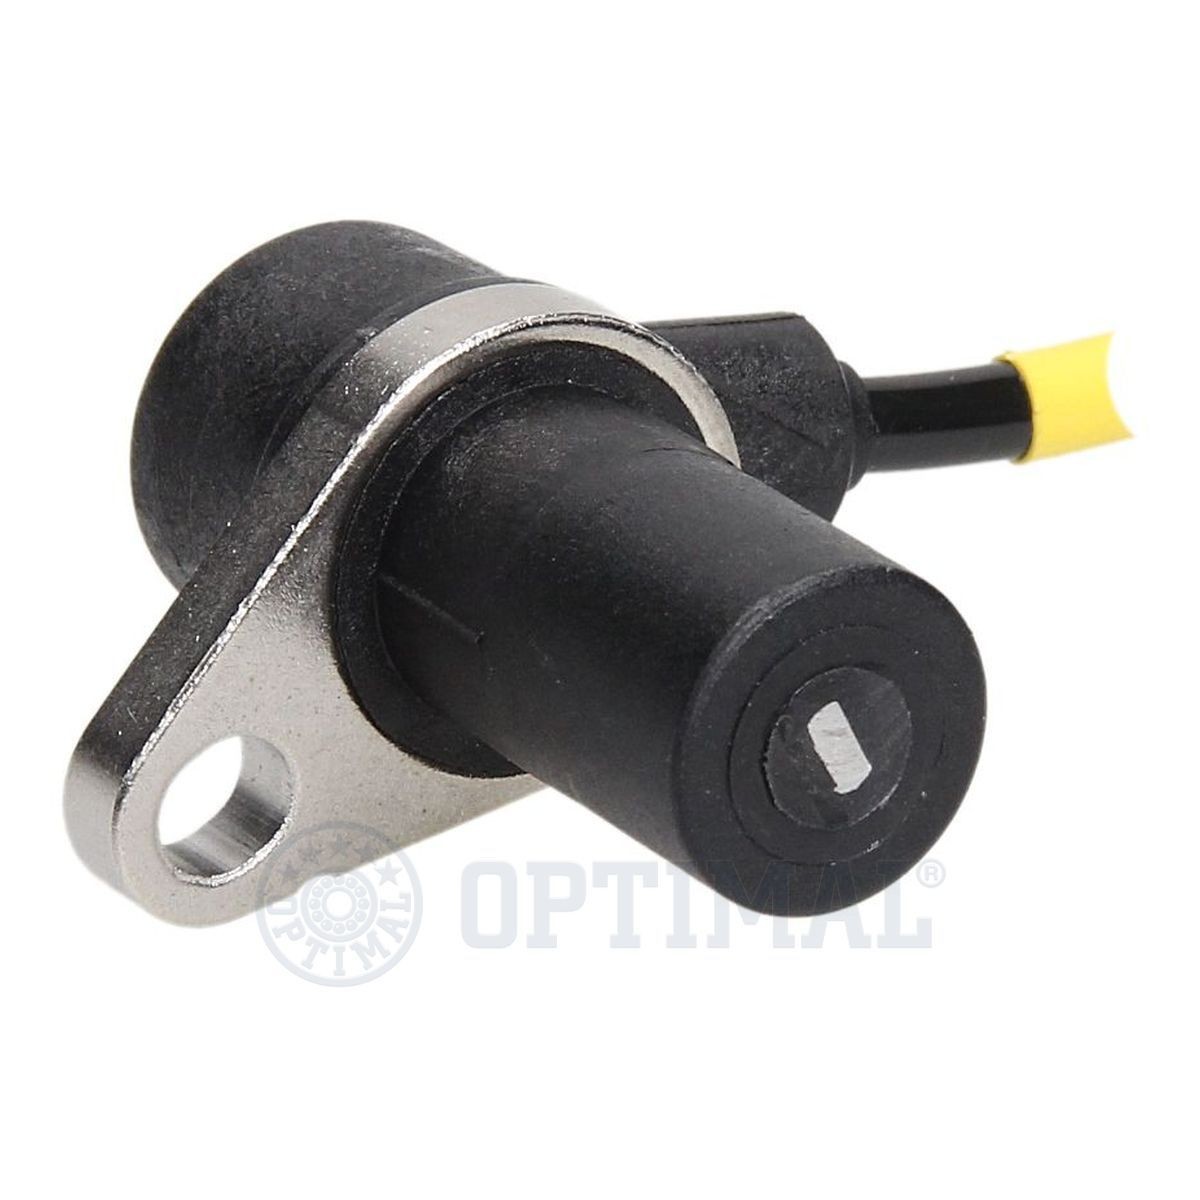 06S606 Anti lock brake sensor OPTIMAL 06-S606 review and test